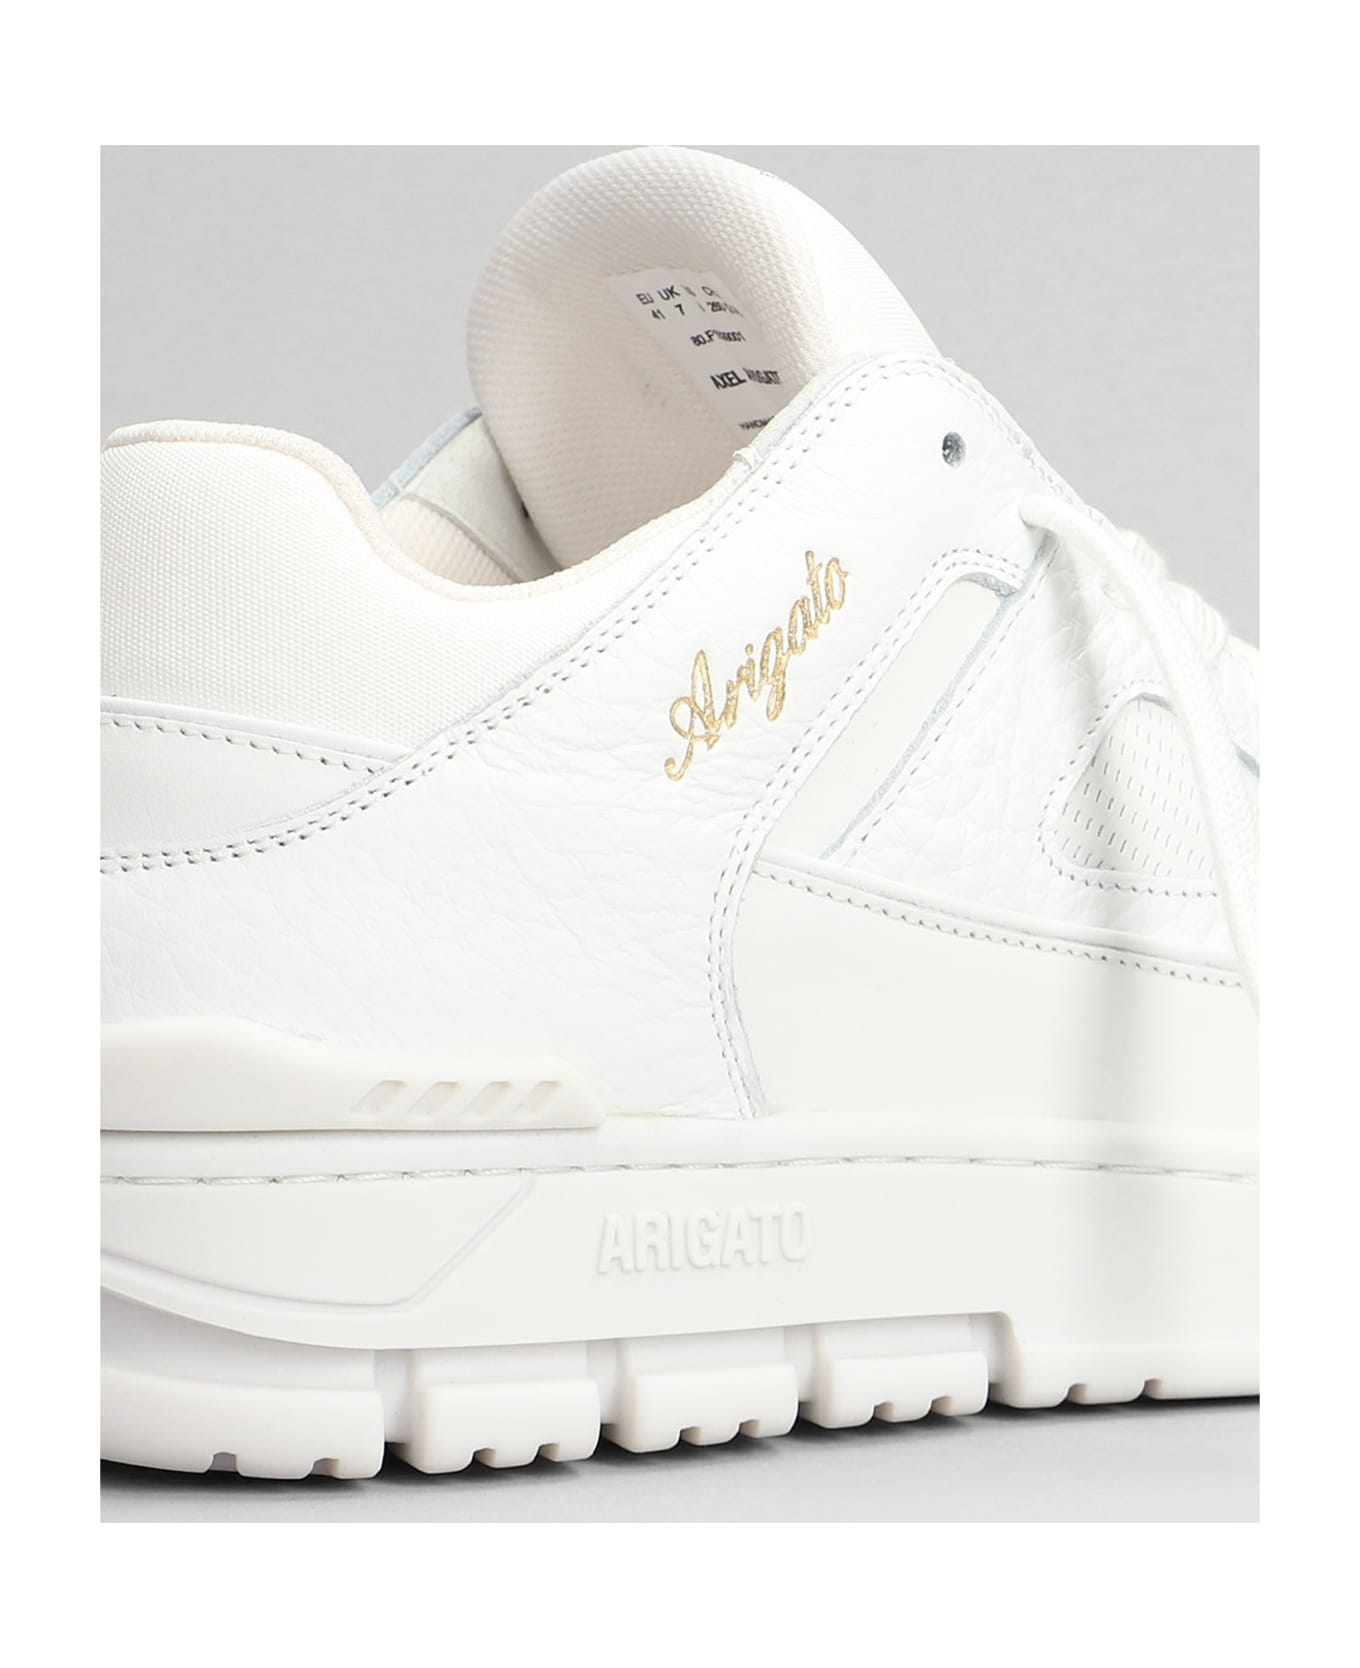 Axel Arigato Area Lo Sneaker Sneakers In White G-742 - white